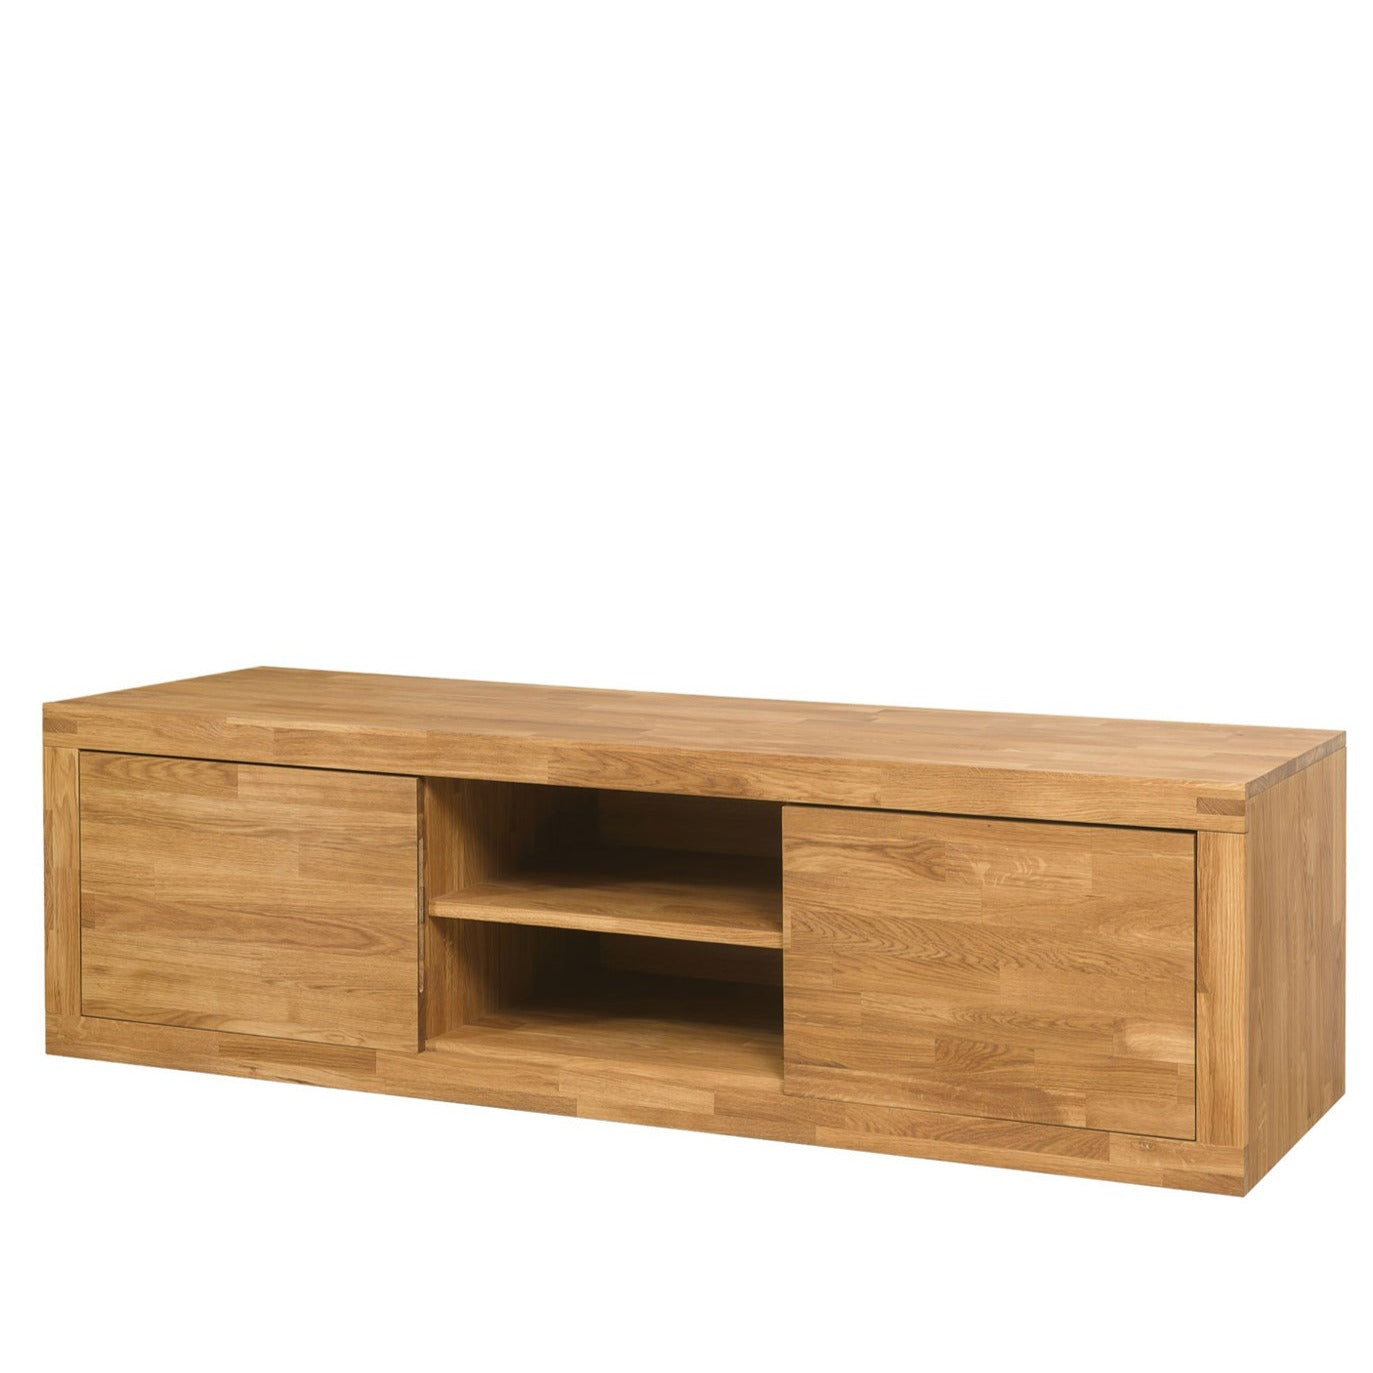 NordicStory Mueble de TV de madera maciza de roble